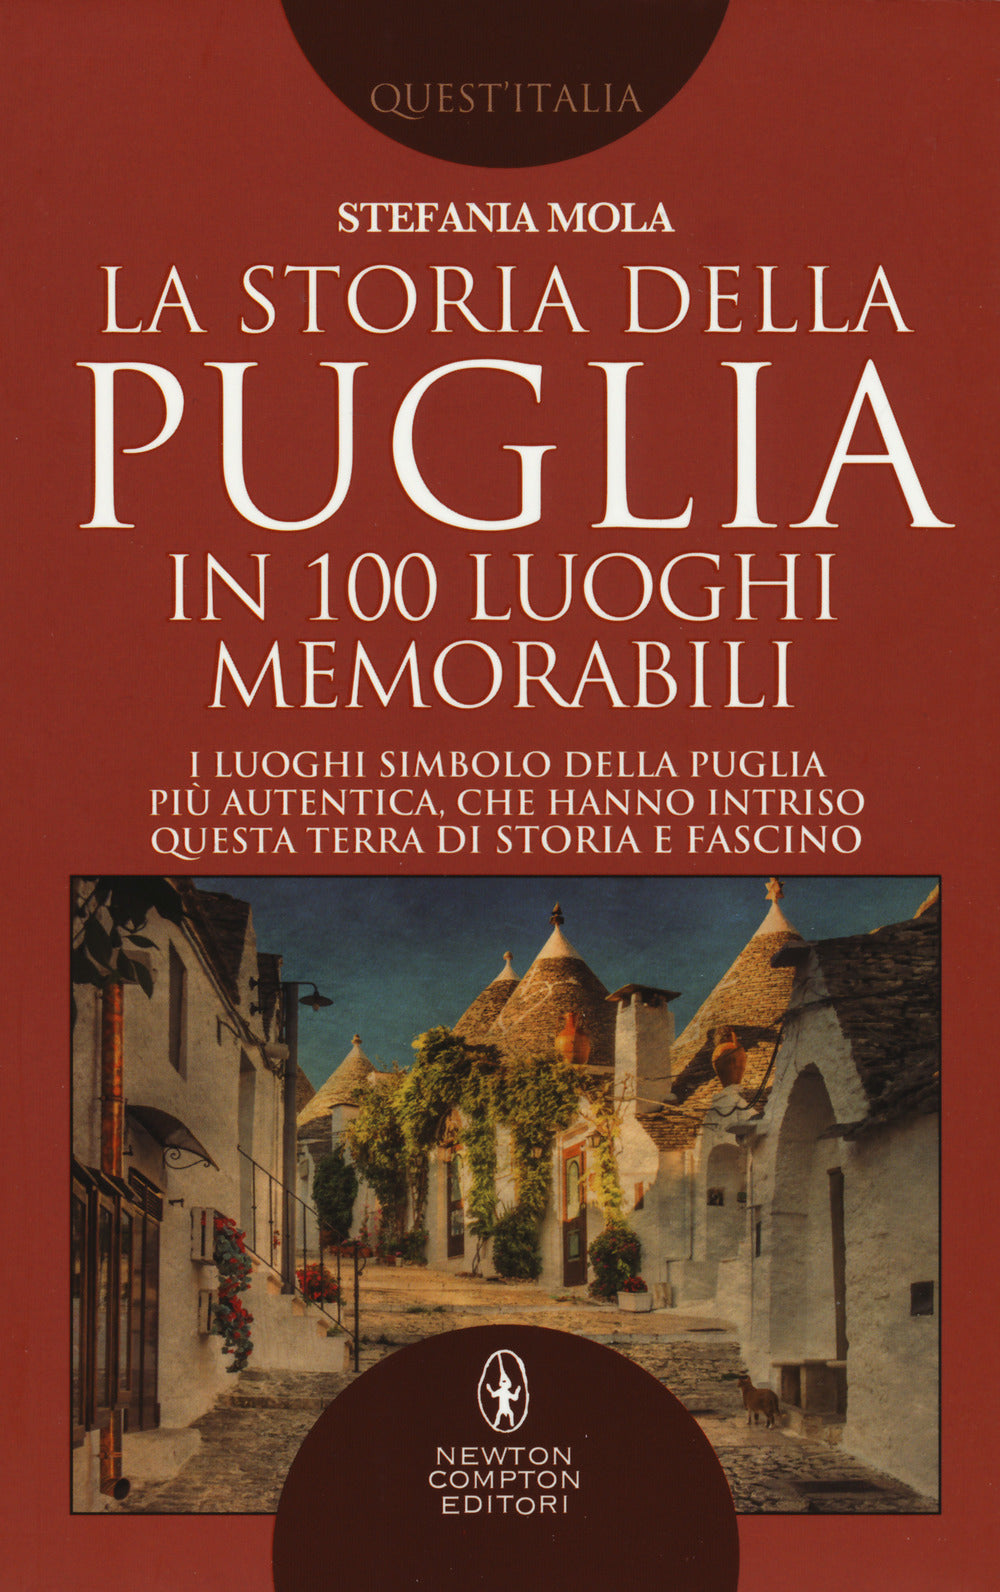 La storia della Puglia in 100 luoghi memorabili.